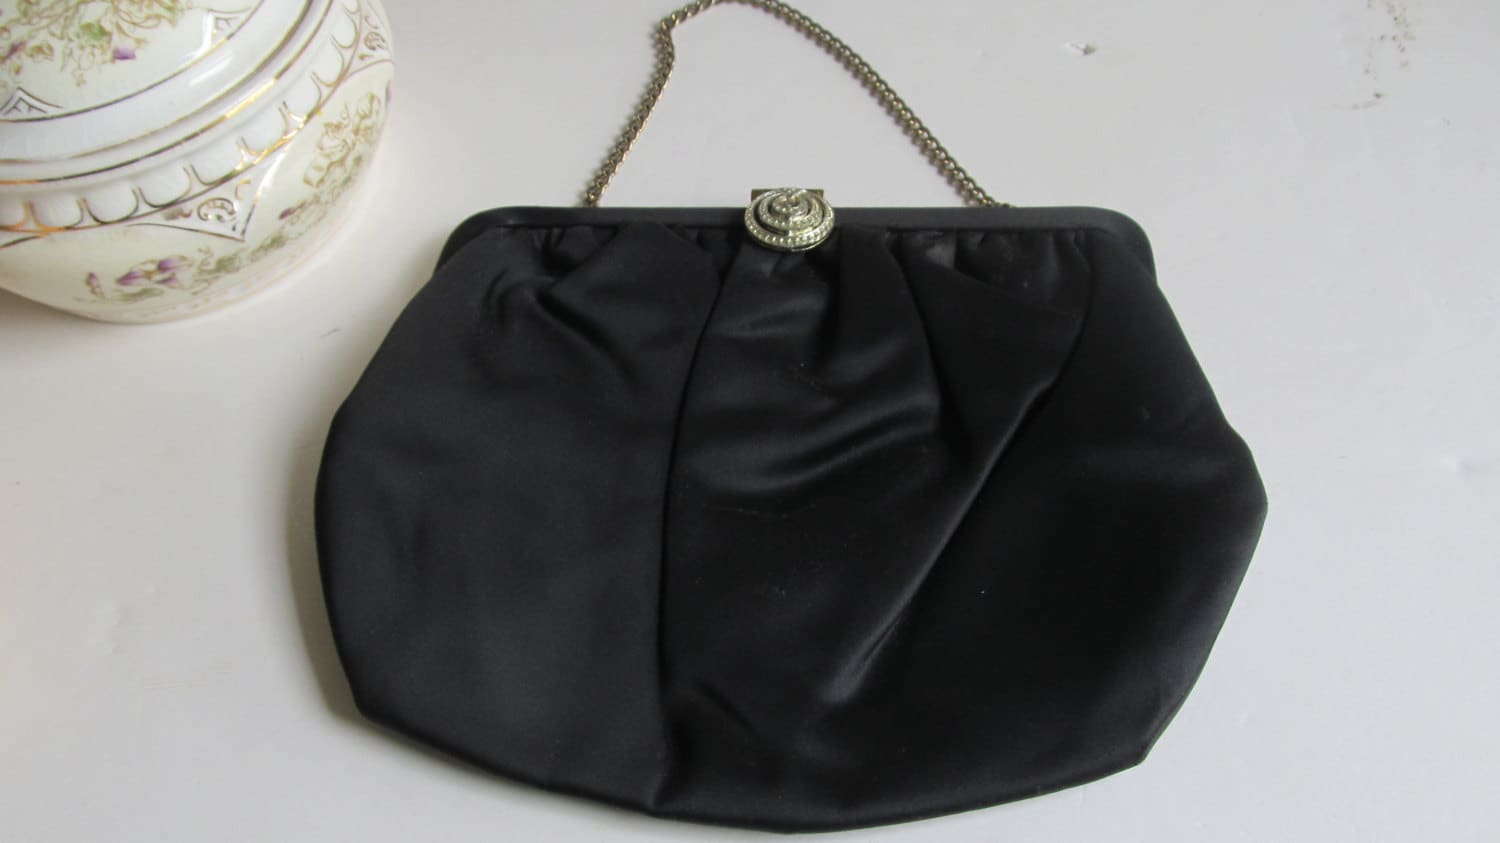 Black Leather Clutch Bag Purse Vintage Accessories